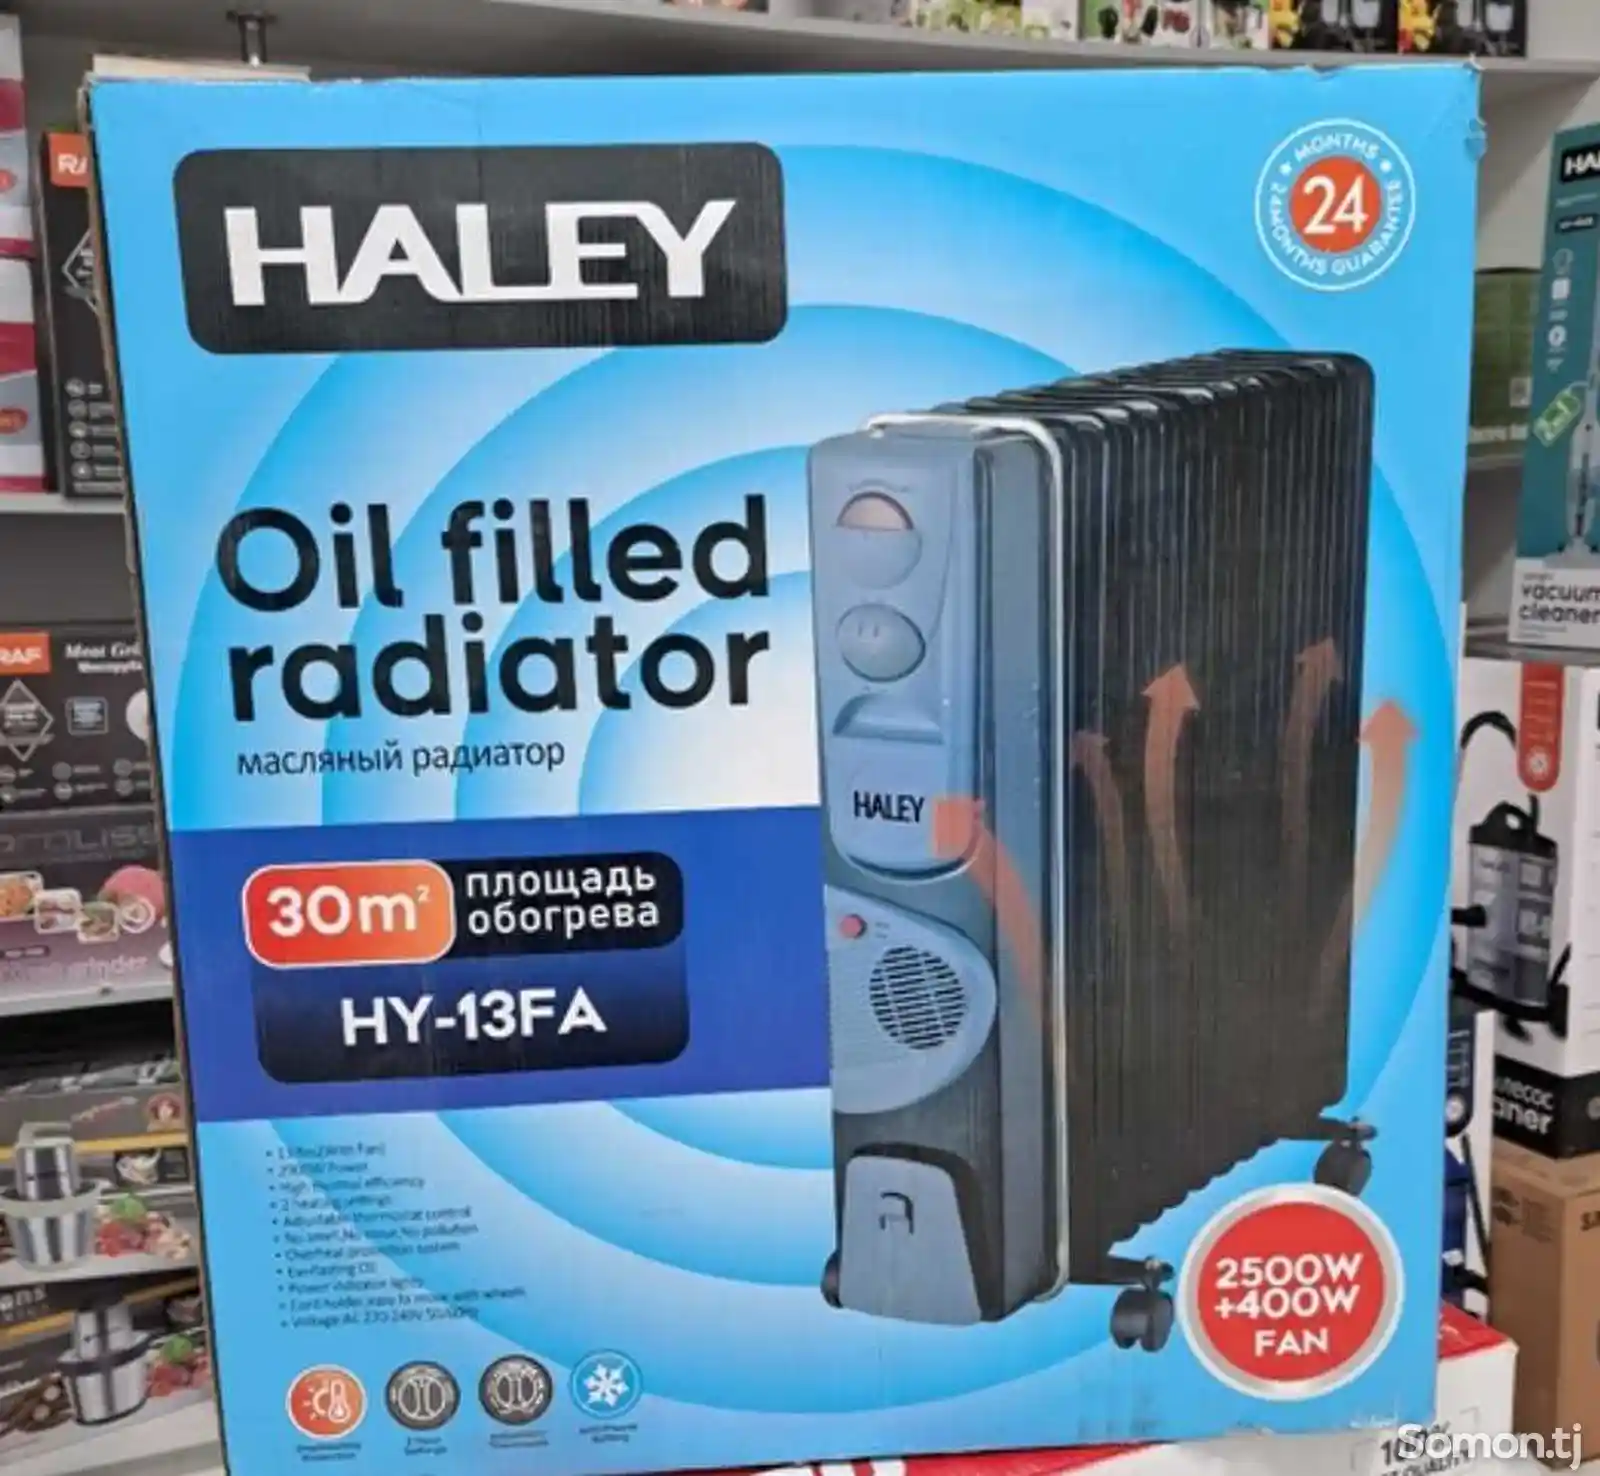 Радиатор Haley-2